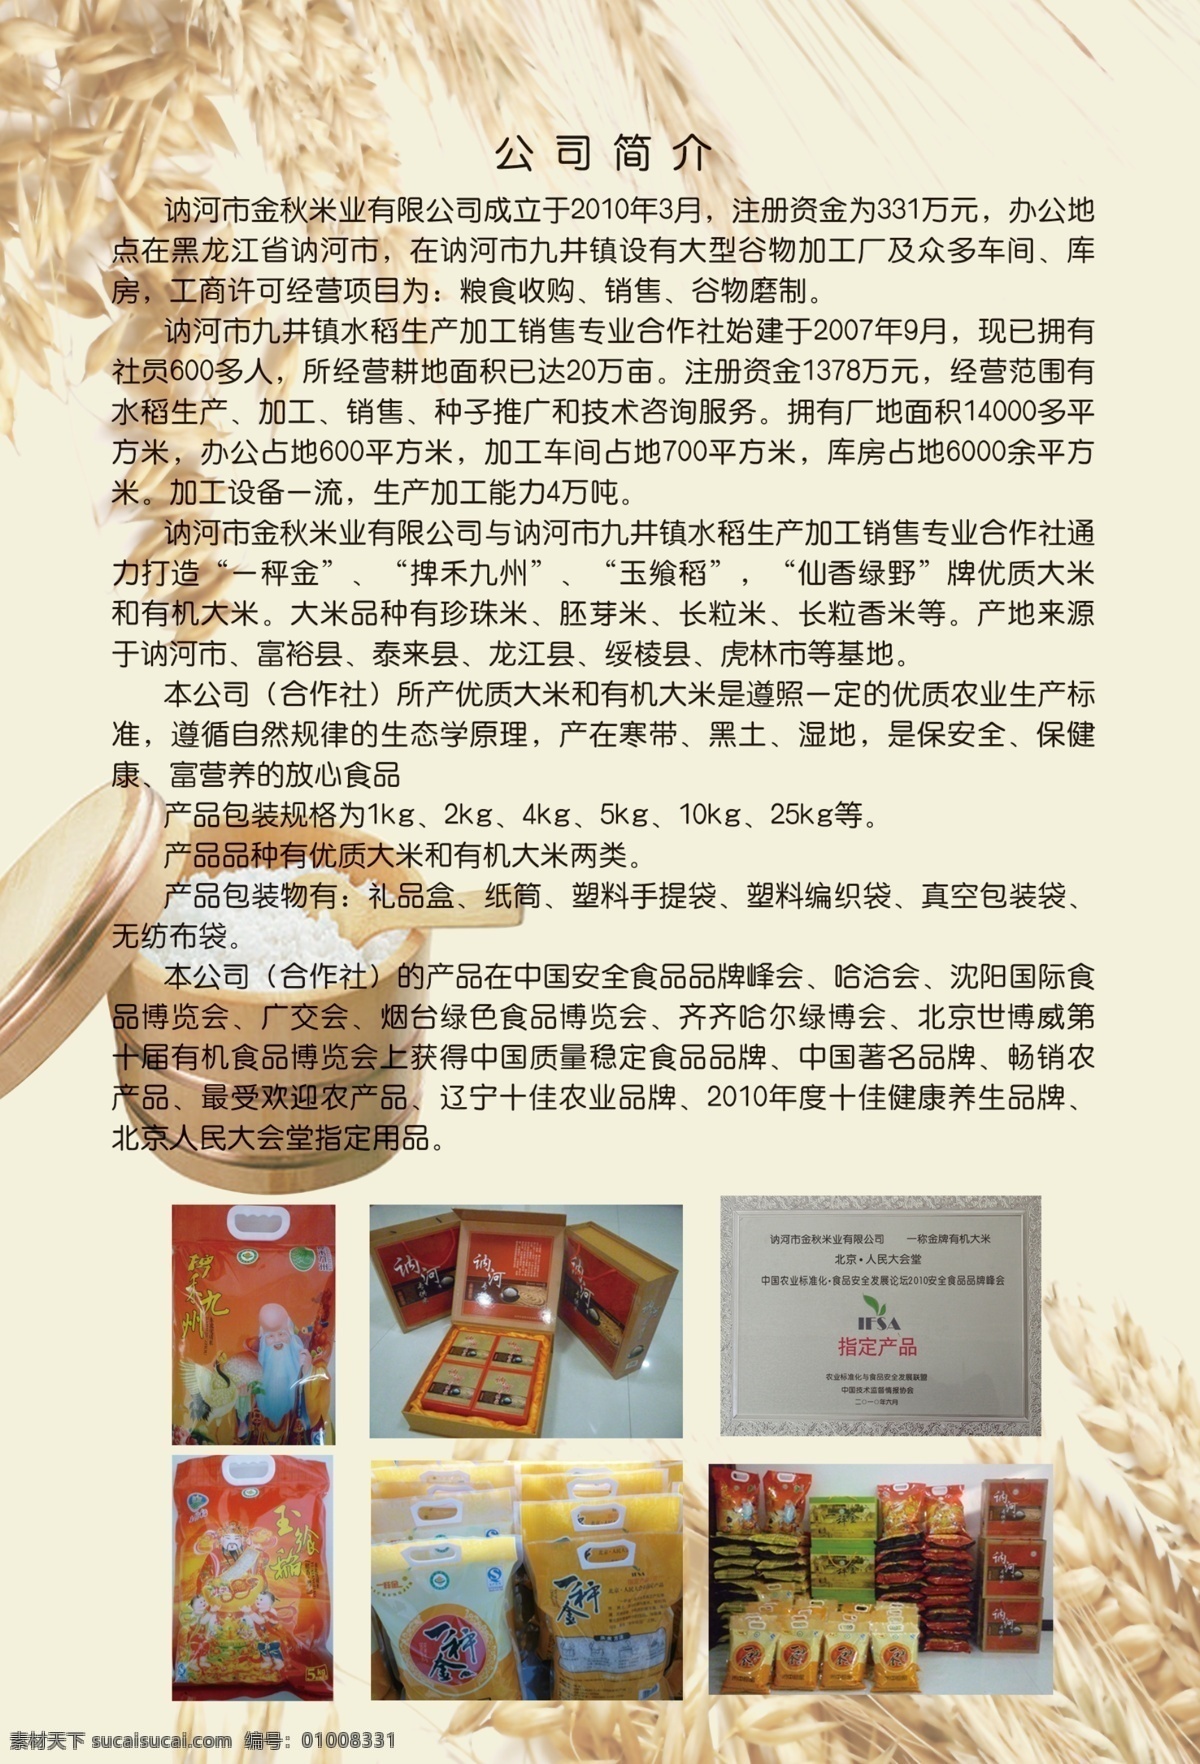 大米宣传dm 大米 小麦 宣传单 dm宣传单 广告设计模板 源文件